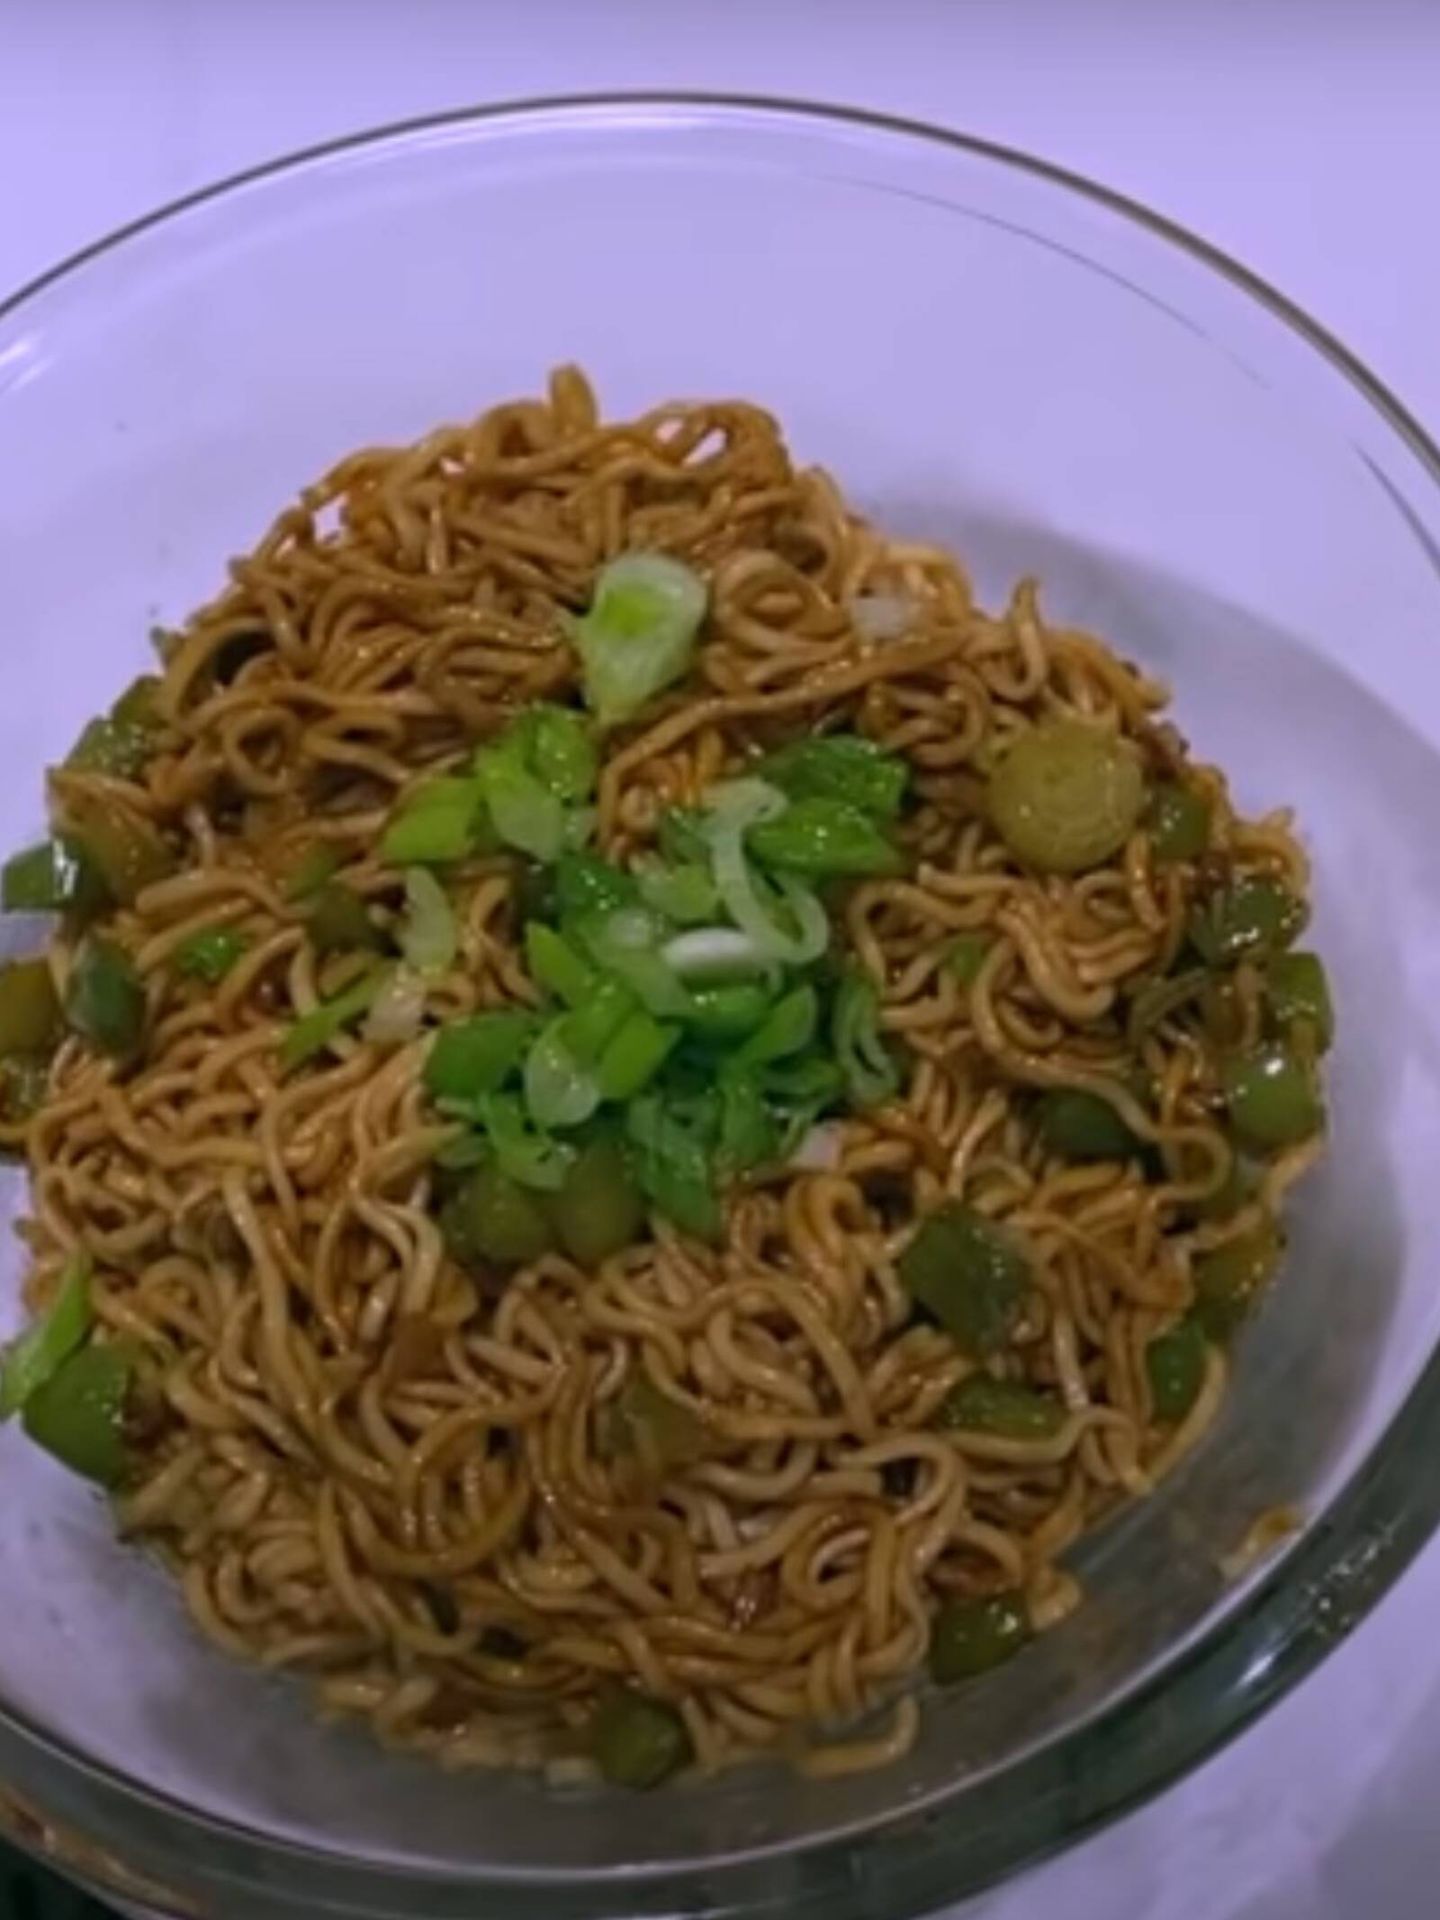 La receta de noodles que Paula Gonu ha compartido en su canal de YouTube. (Cortesía)